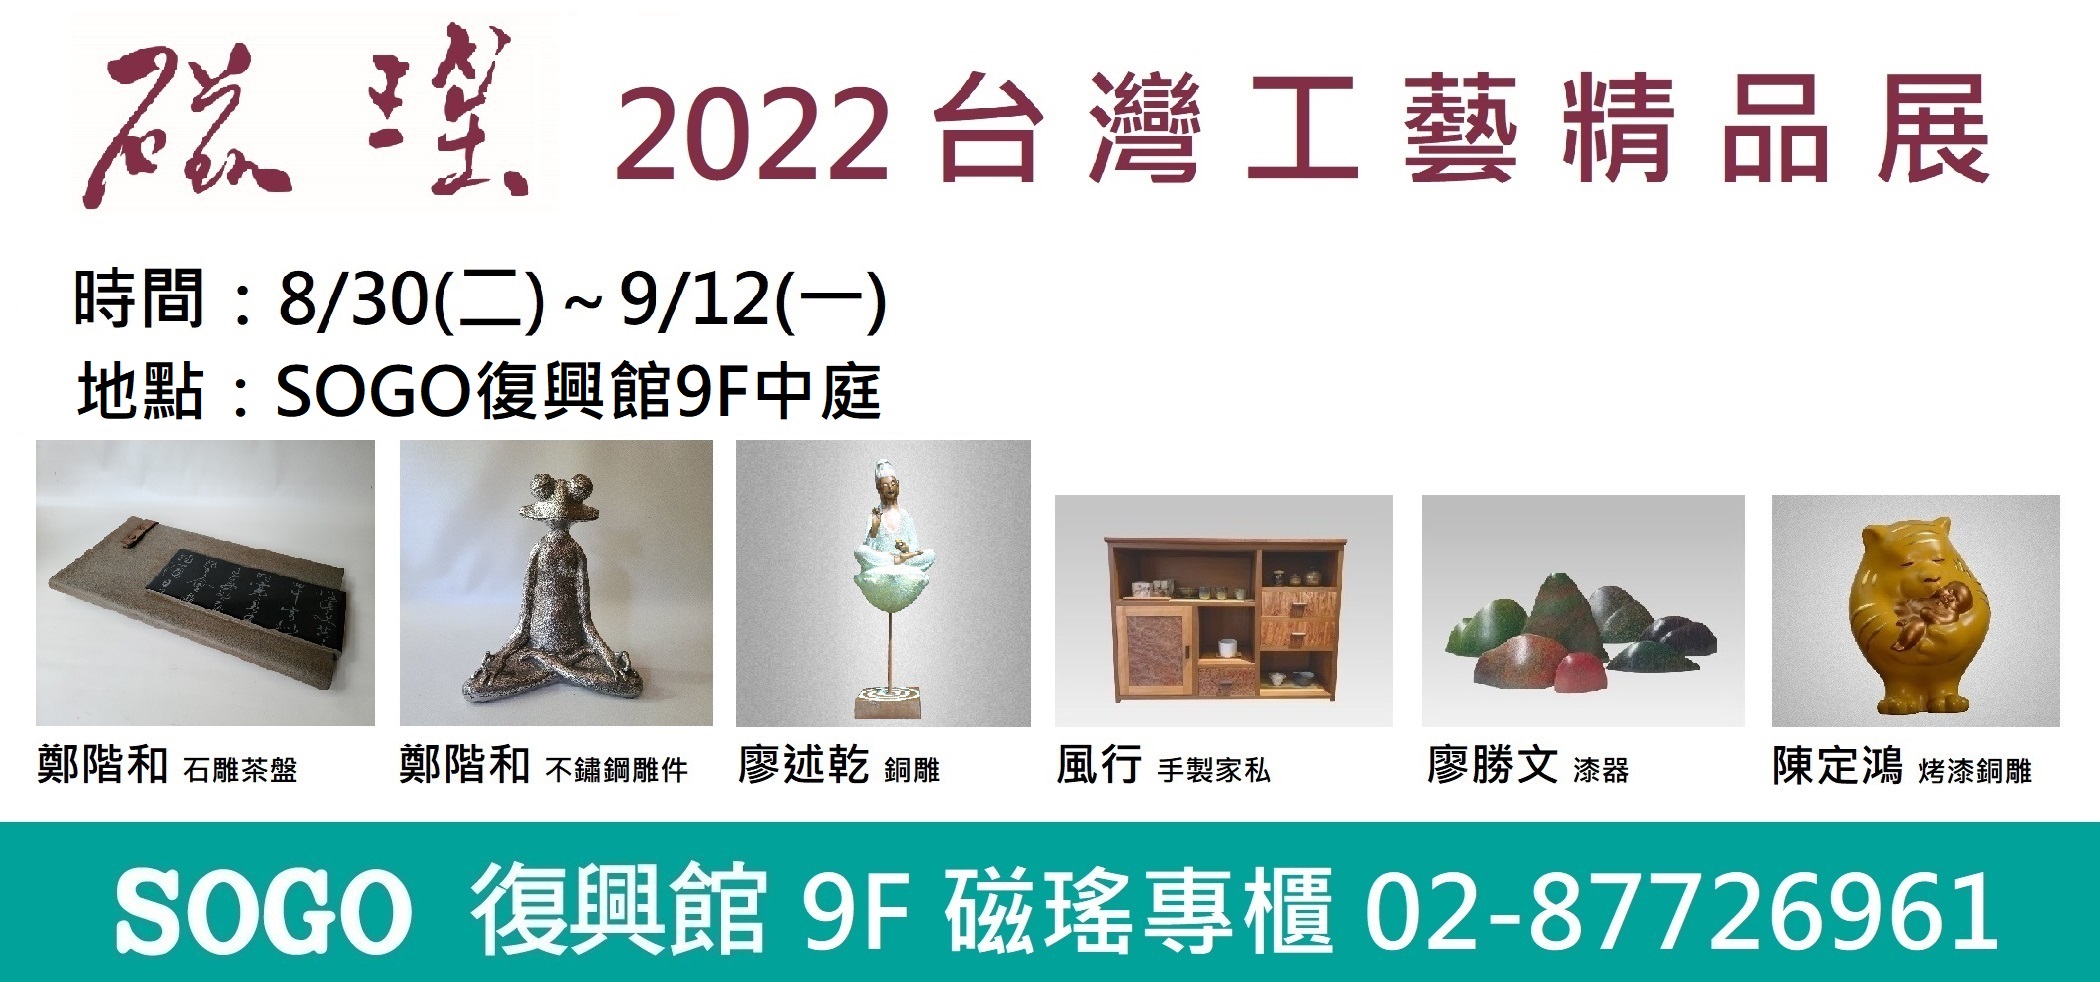 2022 台灣工藝精品展(184)                                時間:8/30(二)～9/12(一) 地點:SOGO百貨復興館9樓中庭